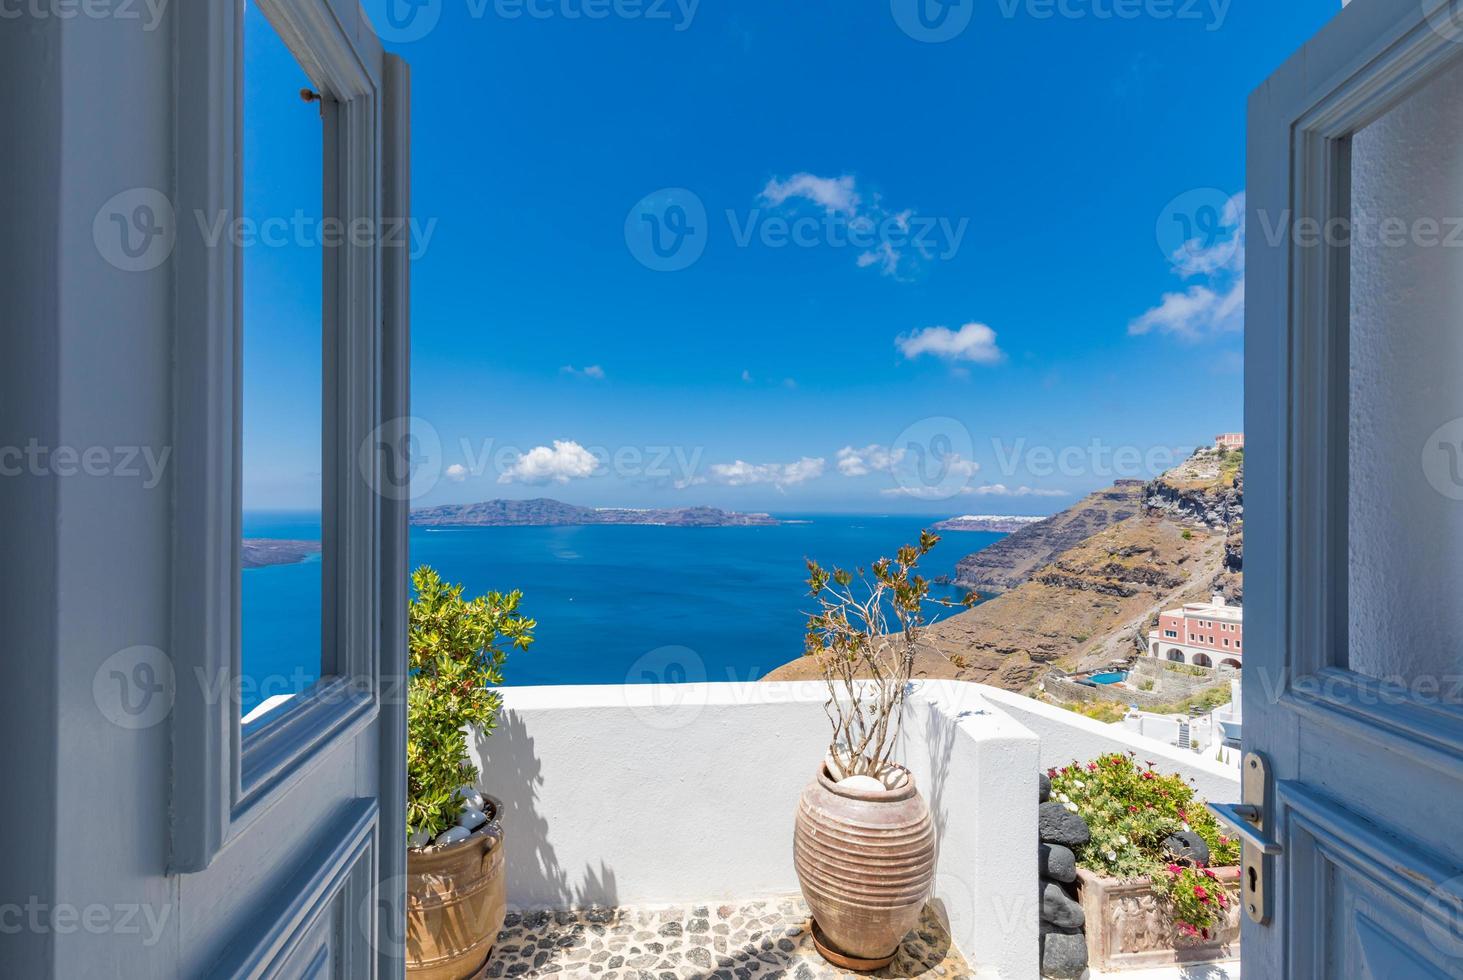 architecture blanche traditionnelle et porte donnant sur la mer méditerranée dans le village de fira sur l'île de santorin, grèce. fond de voyage pittoresque. beau concept de vacances d'été, ciel bleu incroyable photo